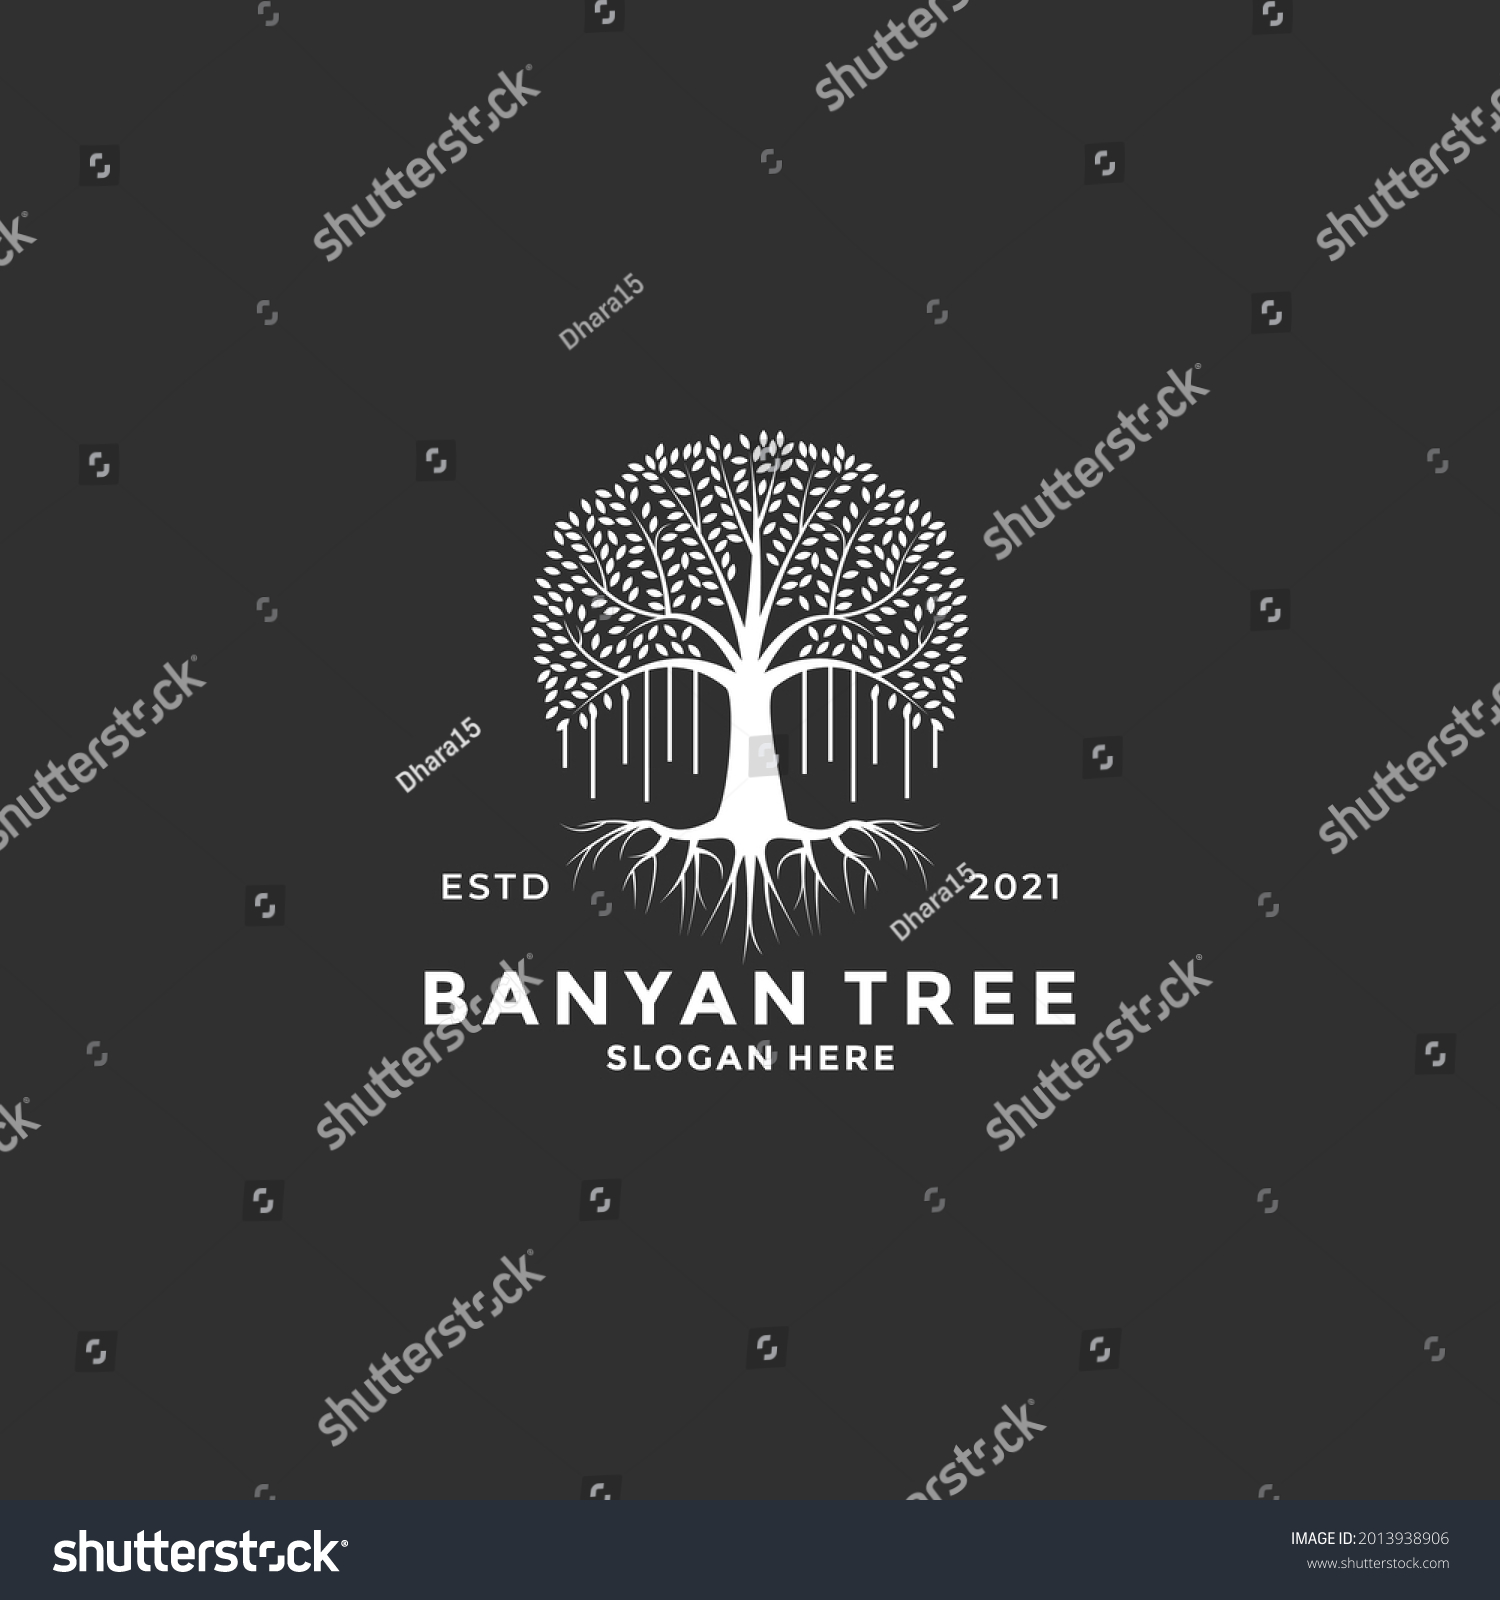 SVG of banyan tree logo design idea vintage style svg